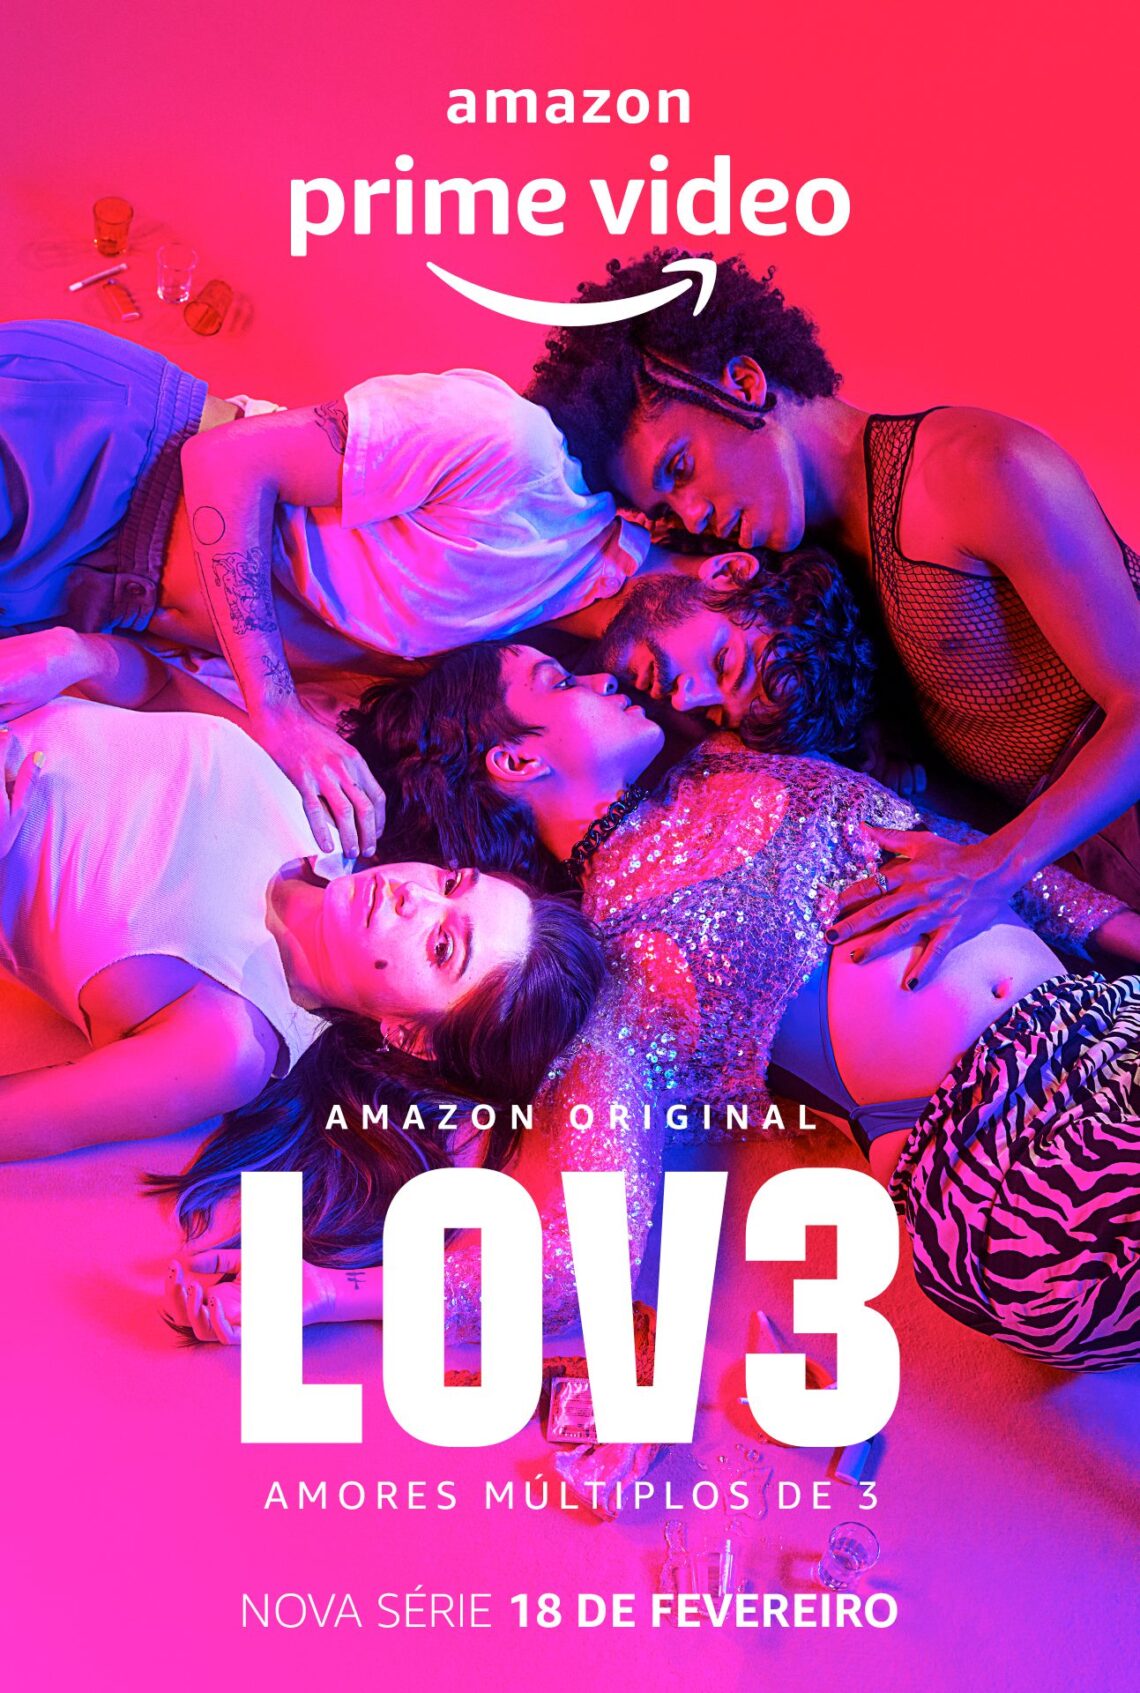 Lov3, Nova Série Brasileira Original Amazon, ganha trailer